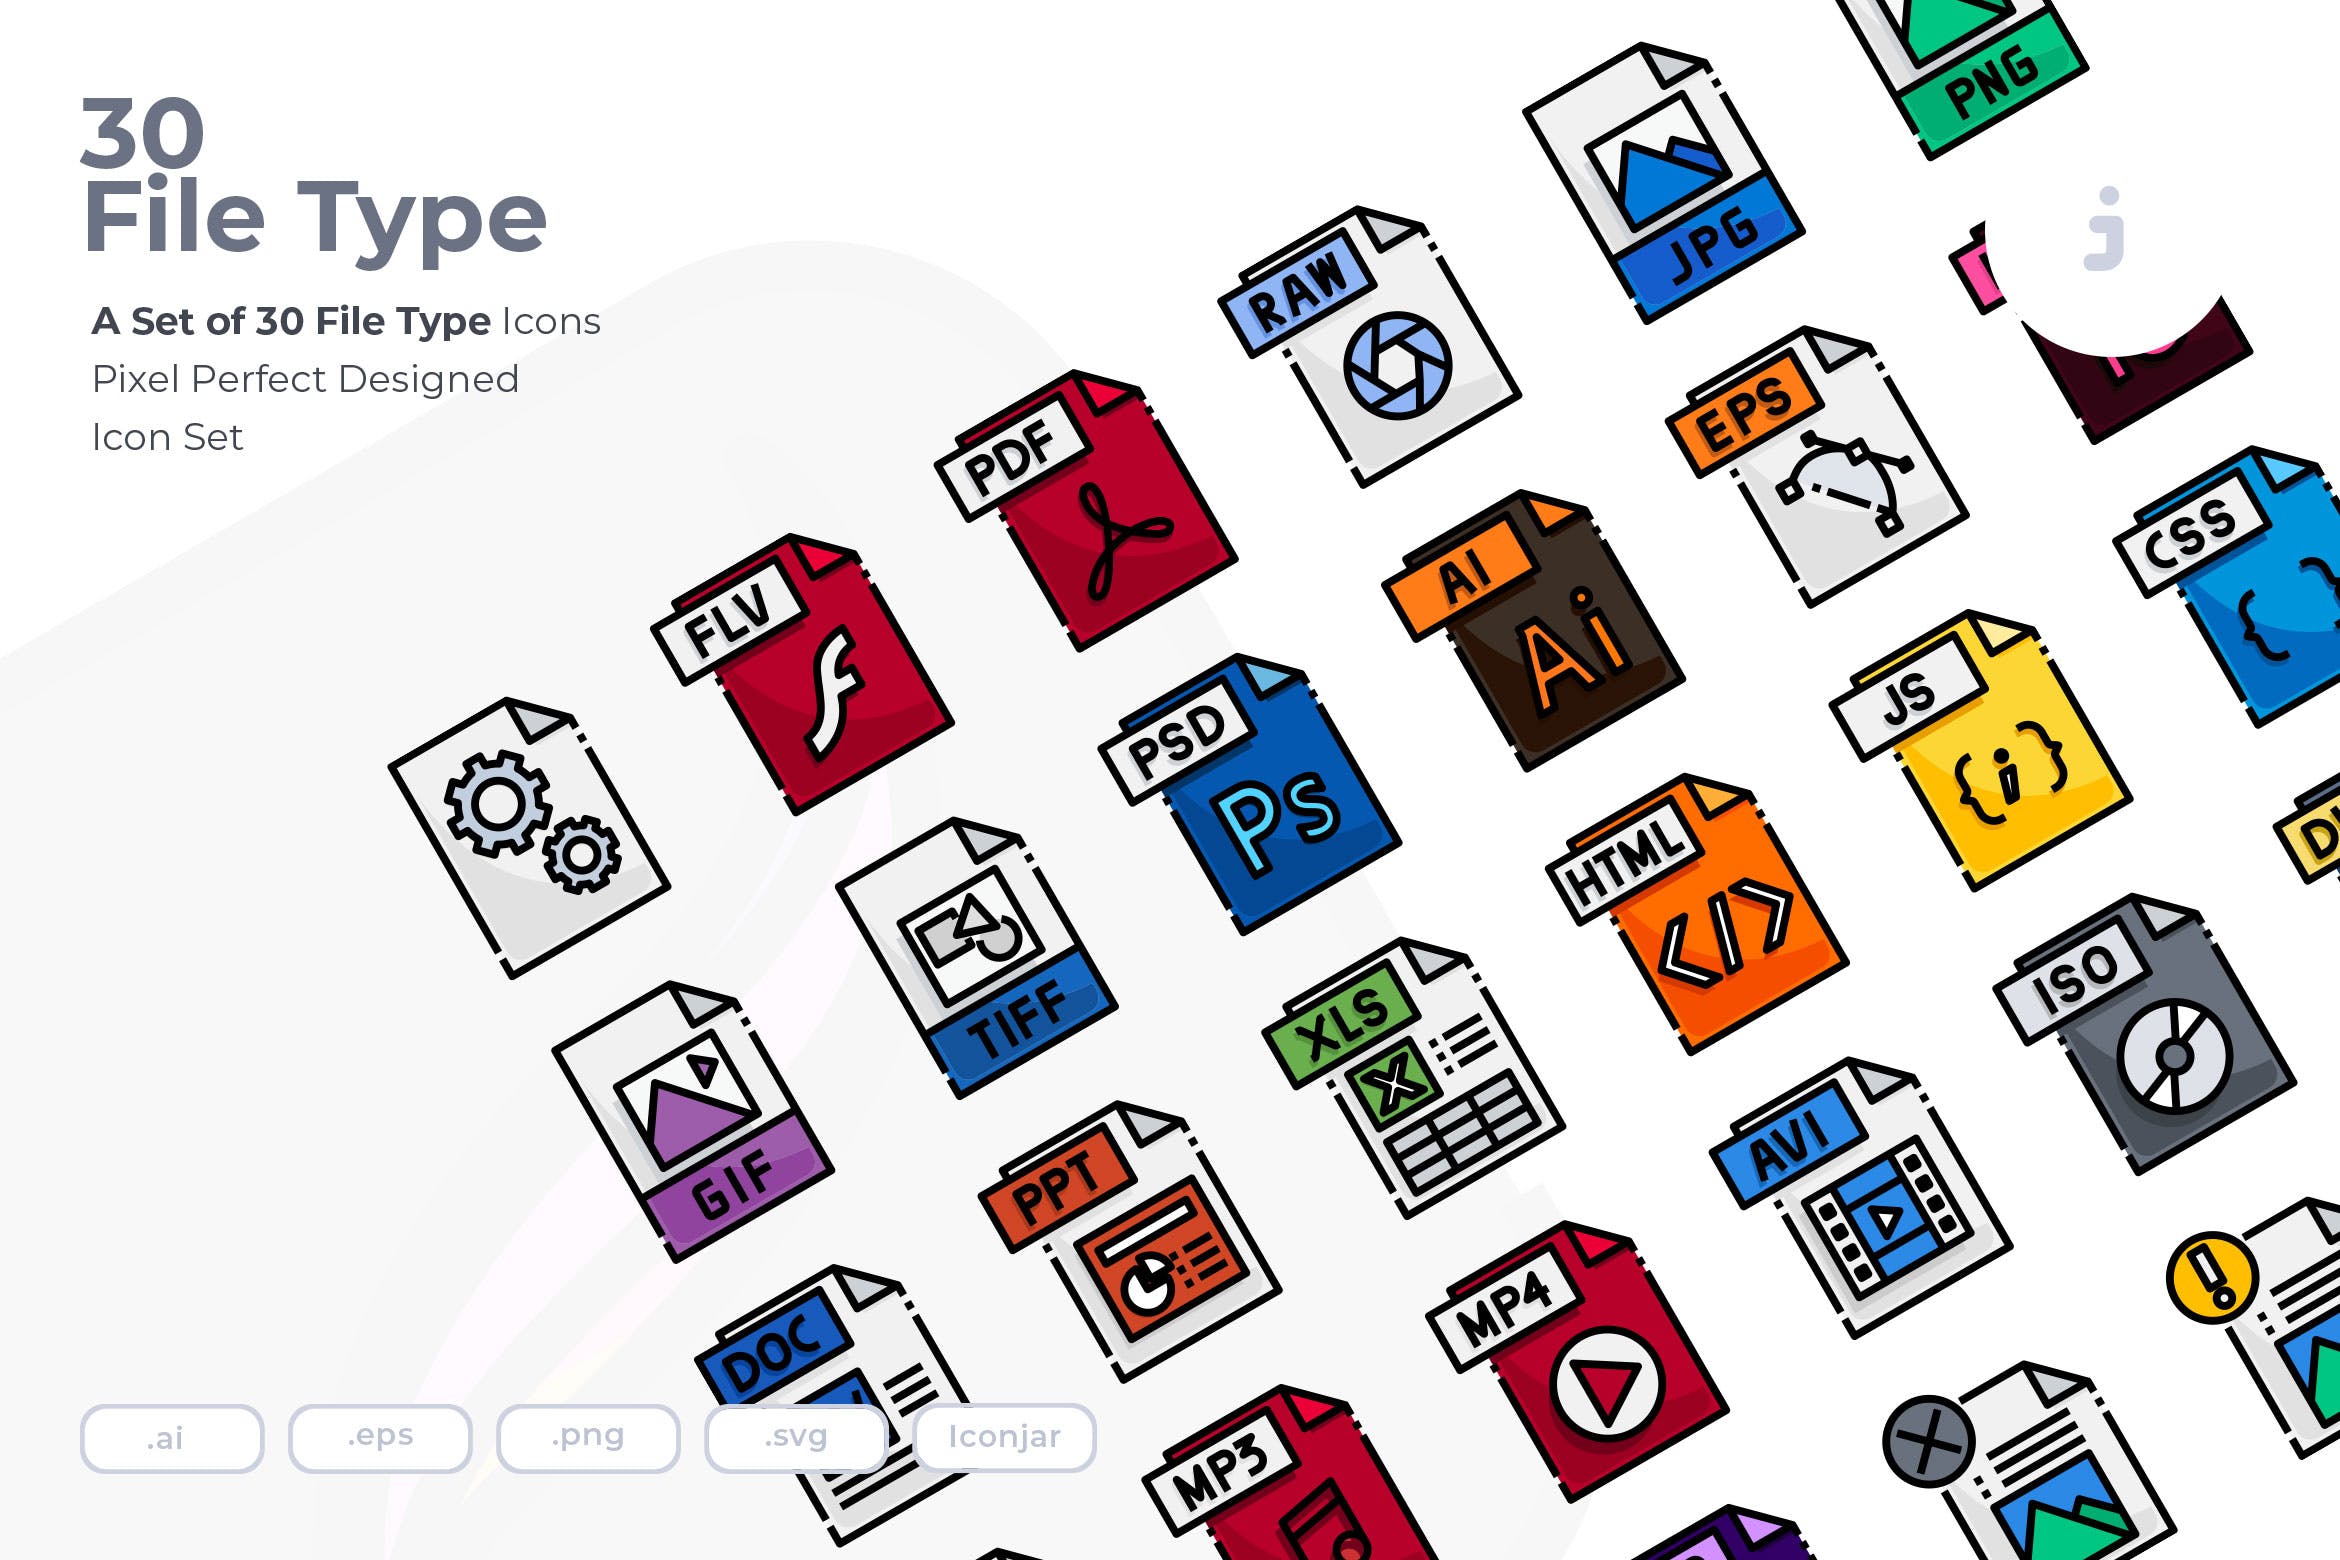 30种文件格式矢量素材库精选图标 30 File Type Icons插图